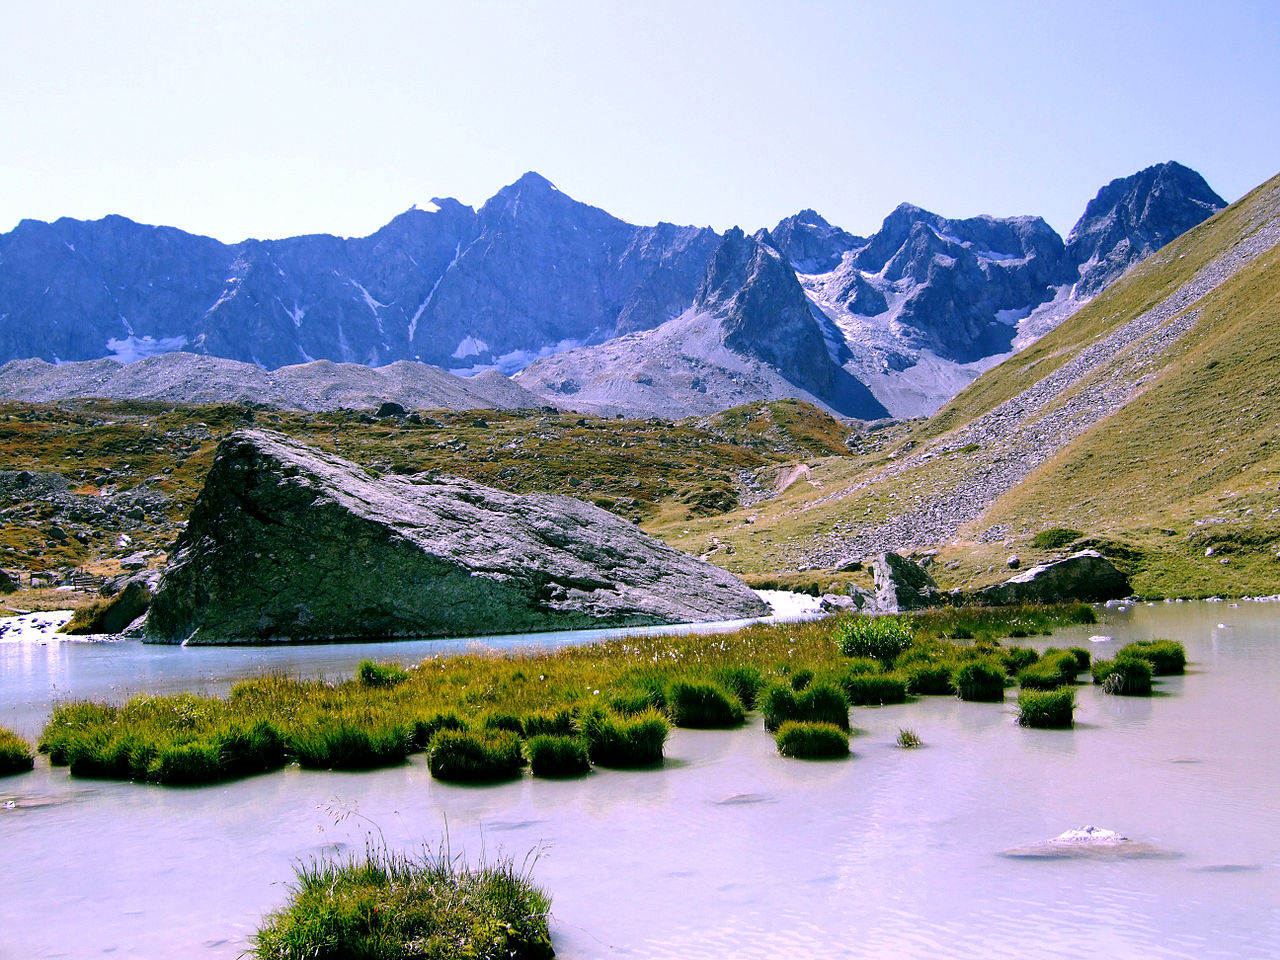 Le parc national des Écrins a été nommé Parc européen de la haute montagne par le Conseil de l'Europe. © Dominicus Johannes Bergsma, Wikimedia Commons, cc by sa 3.0